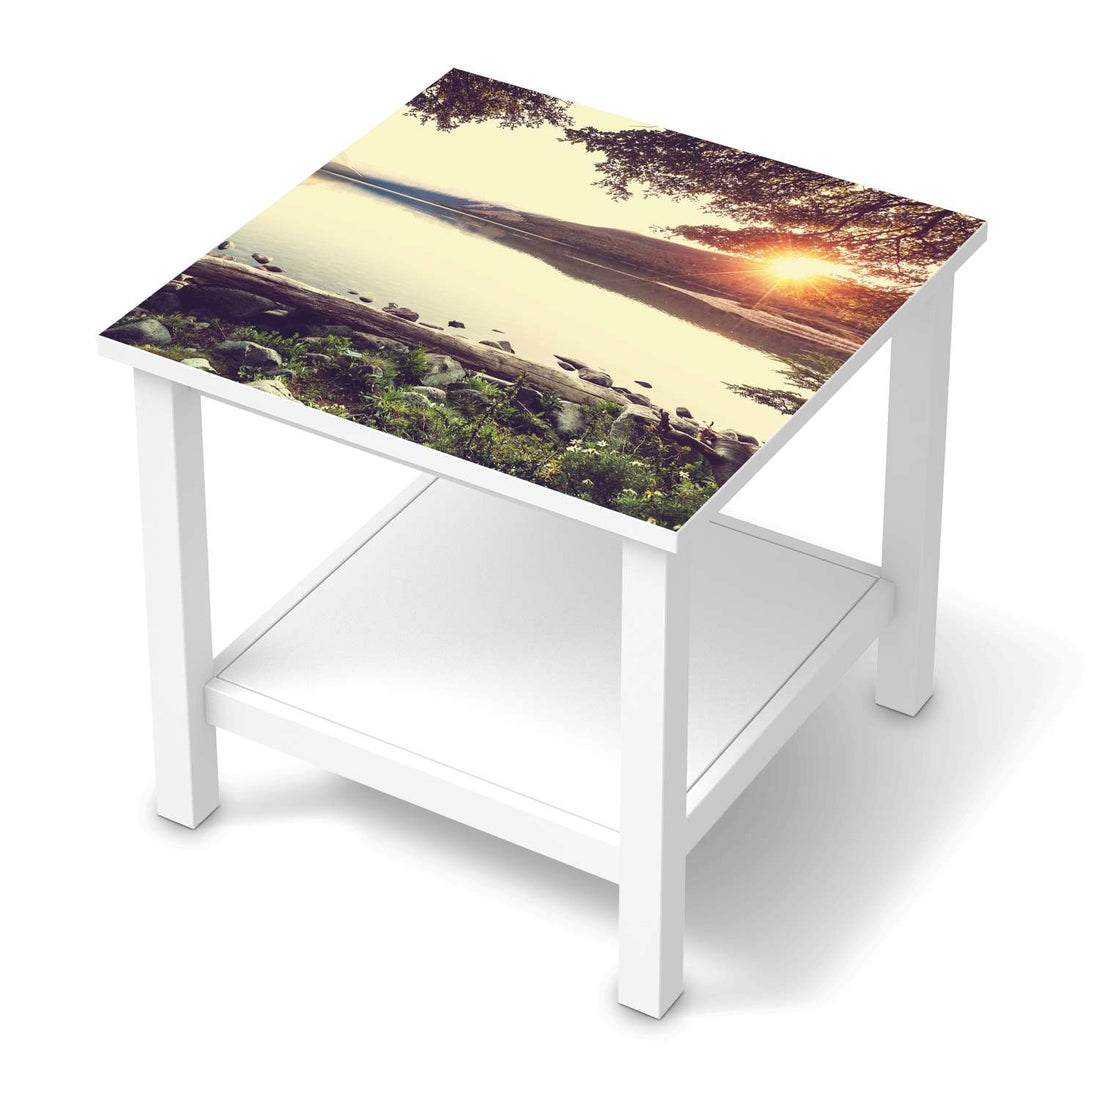 Möbel Klebefolie Seaside Dreams - IKEA Hemnes Beistelltisch 55x55 cm  - weiss